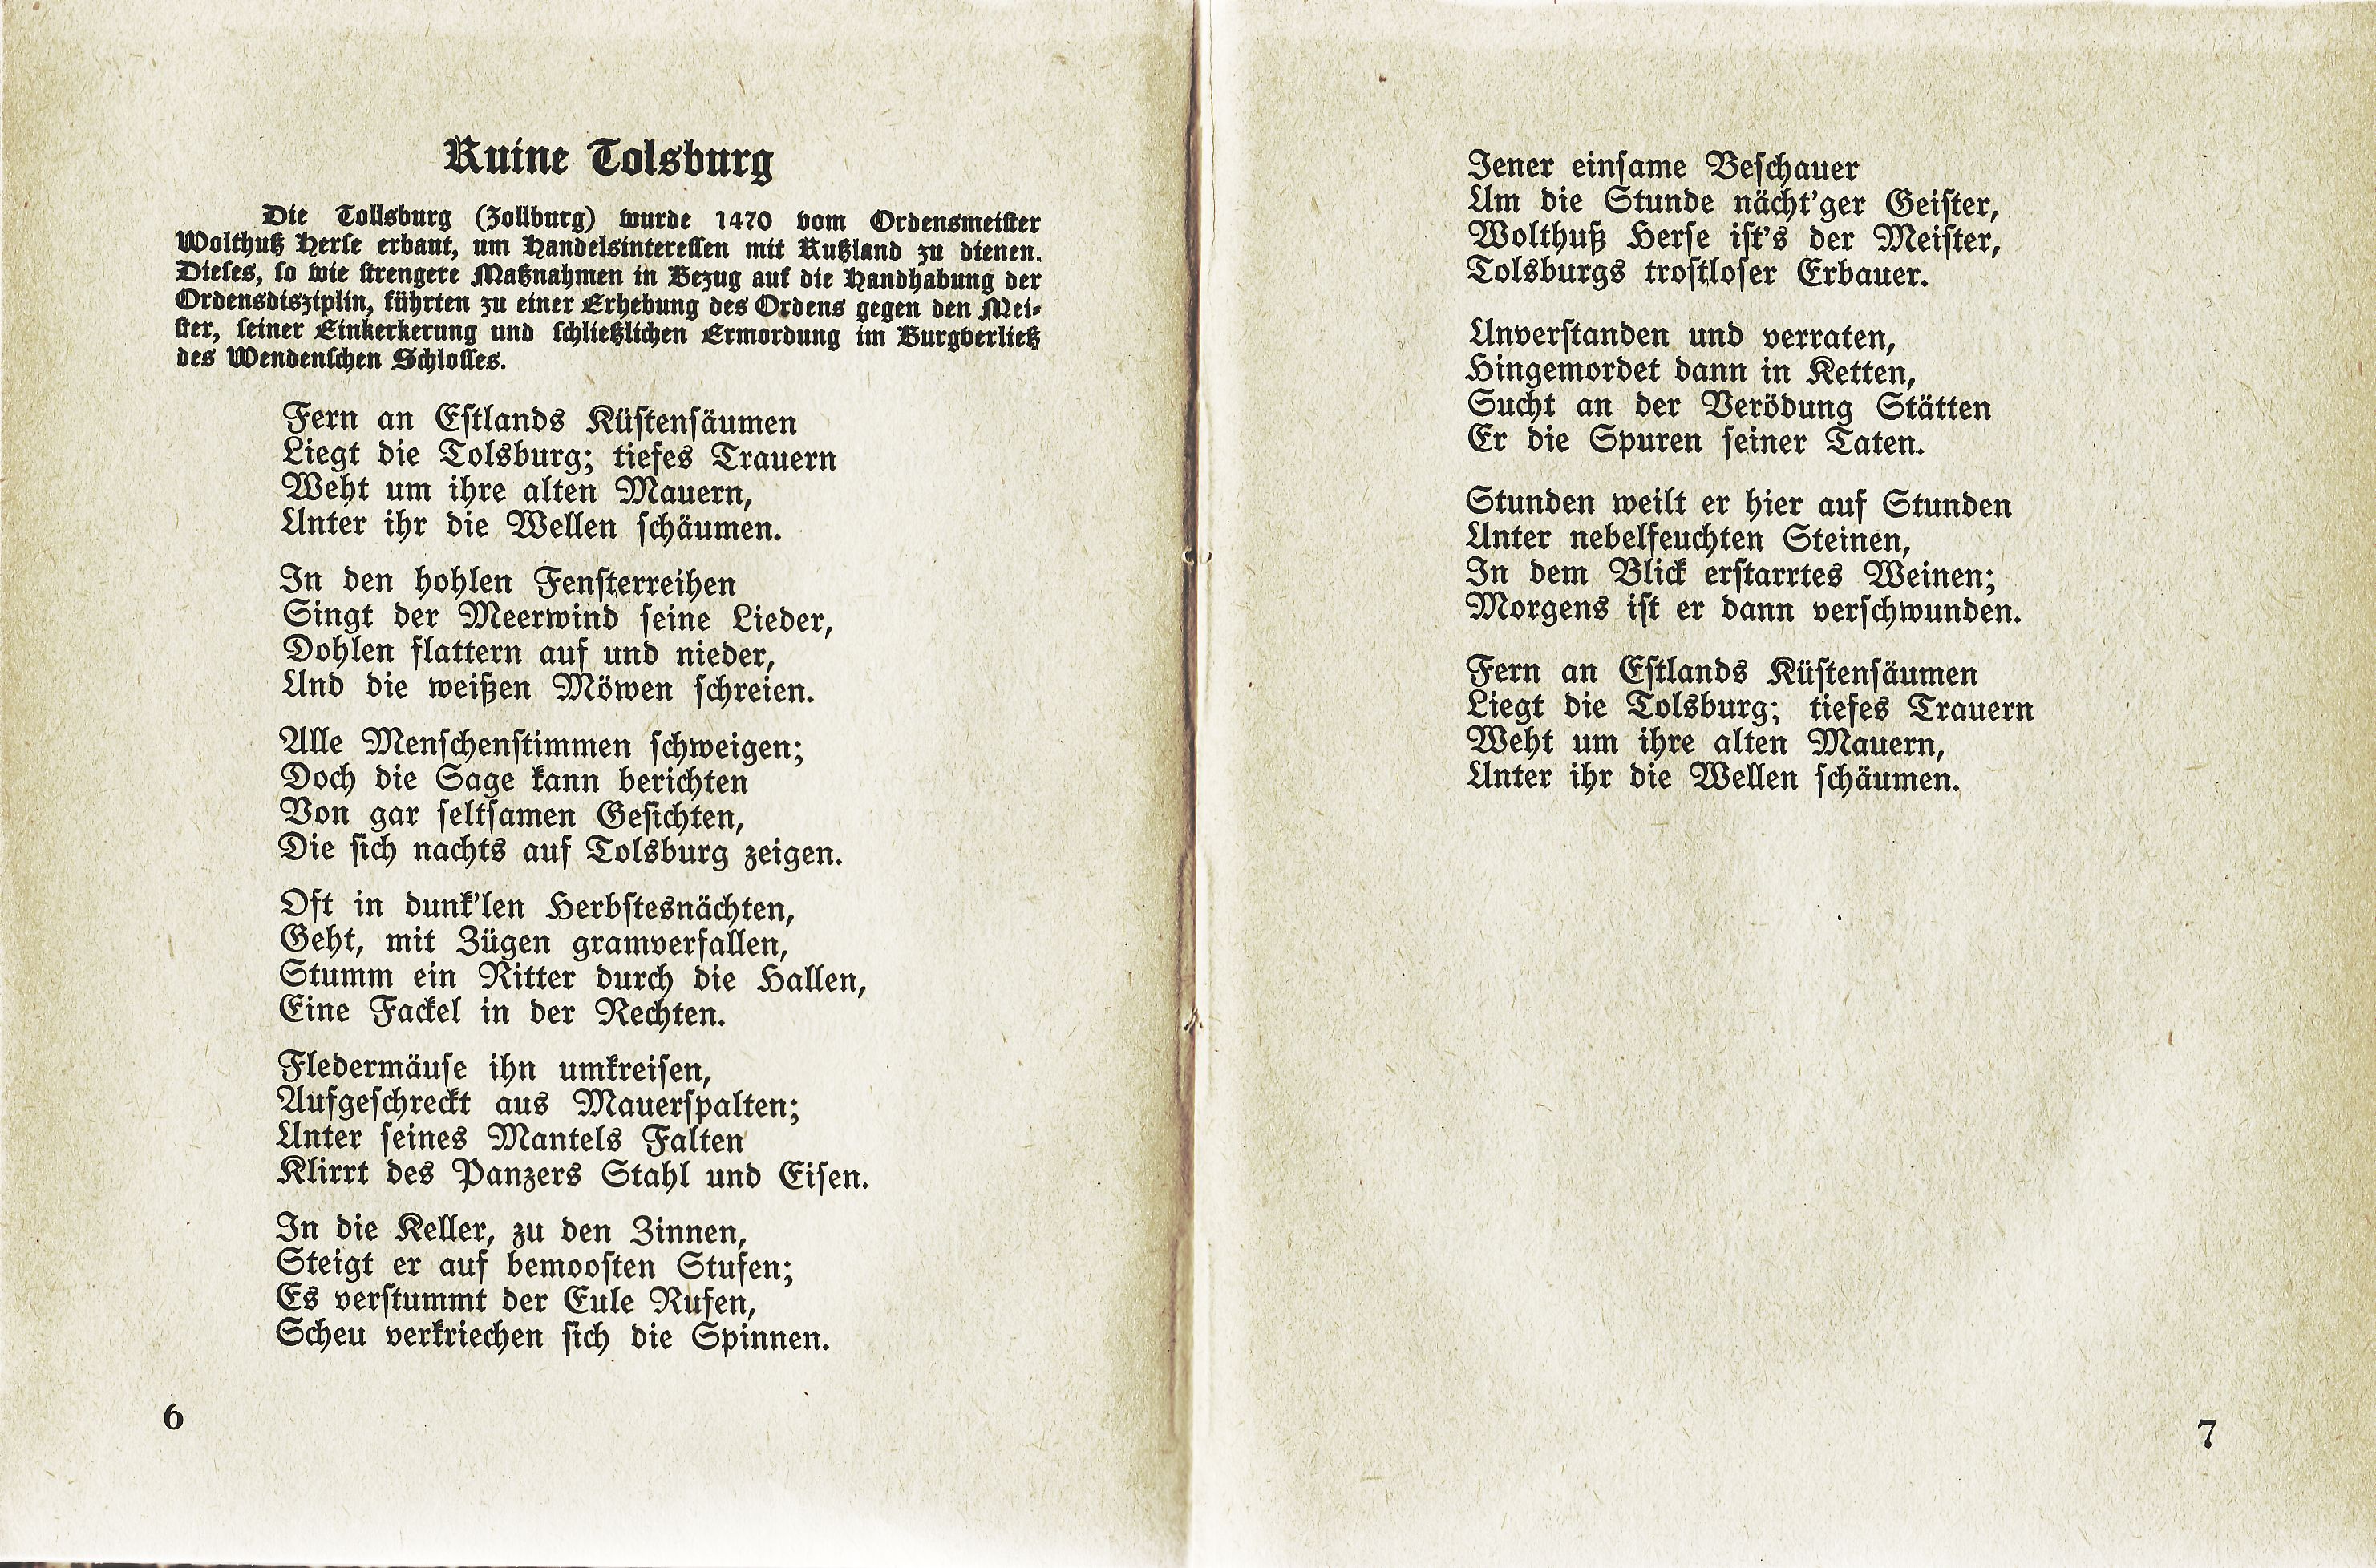 Ruine Tolsburg (1934) | 1. (6-7) Main body of text